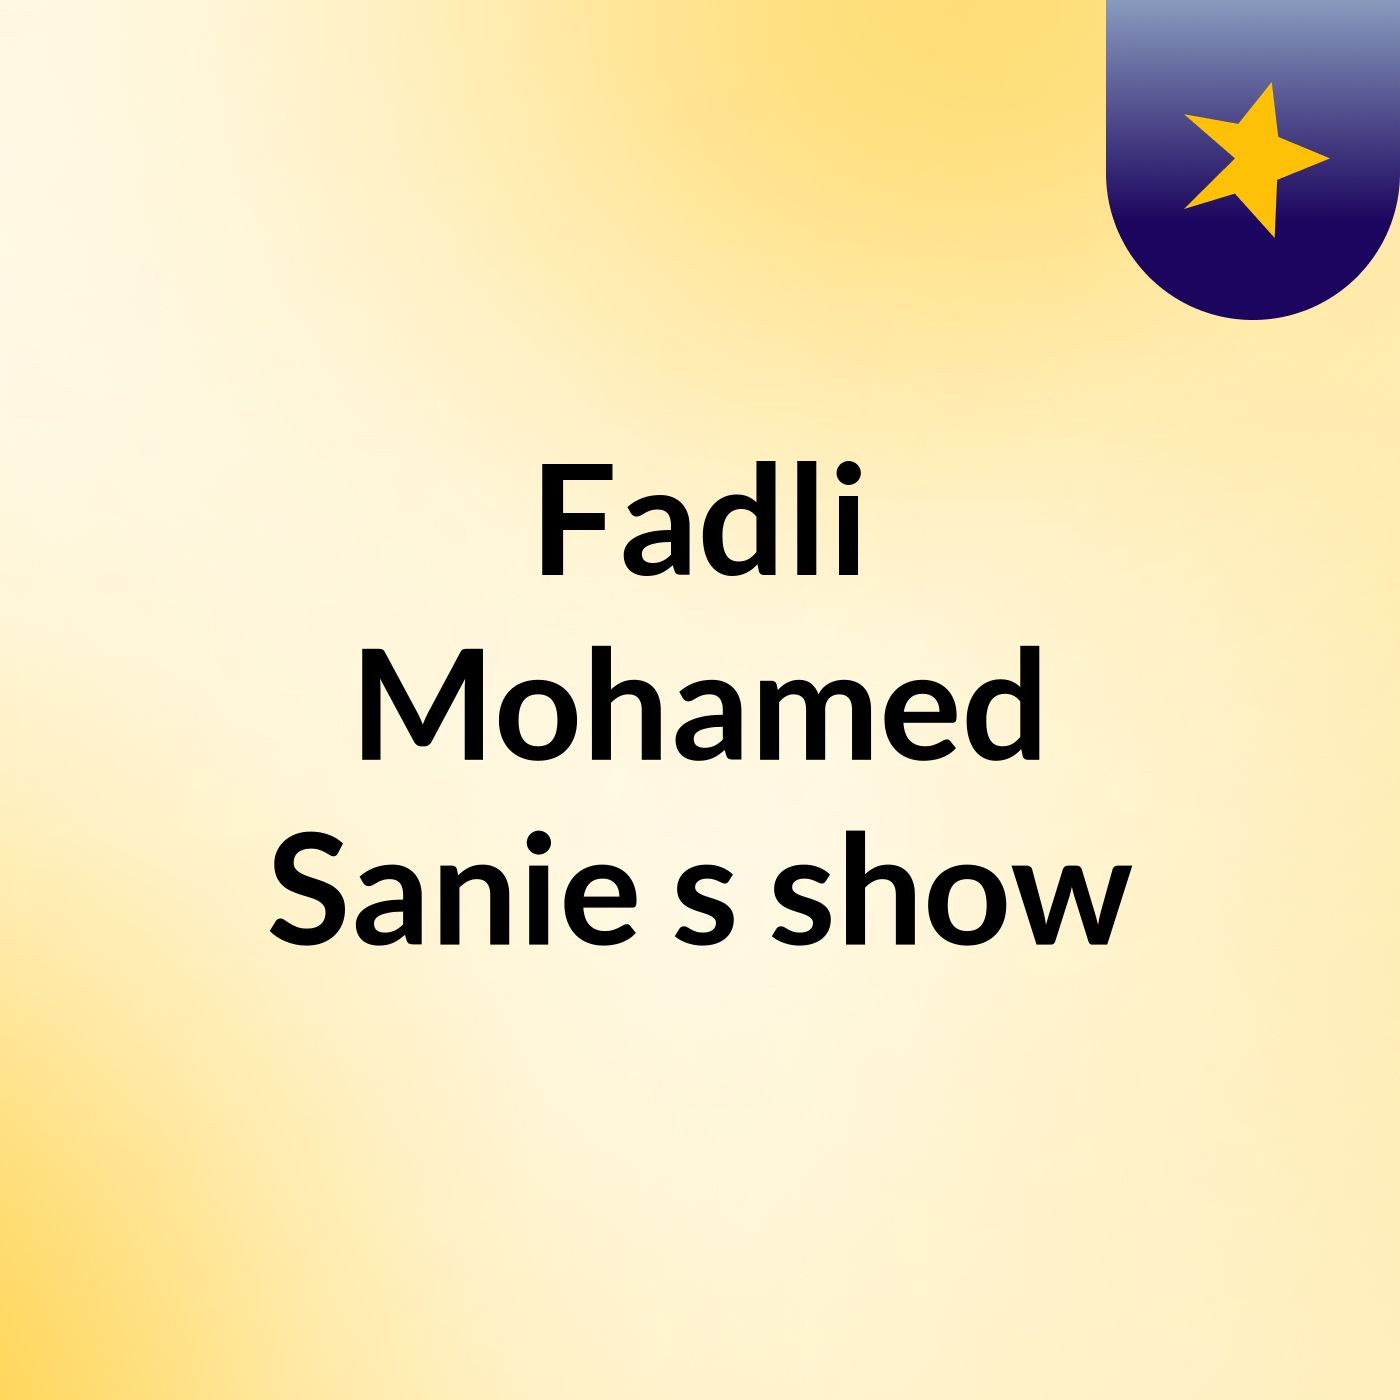 Episode 20 - Fadli Mohamed Sanie's show